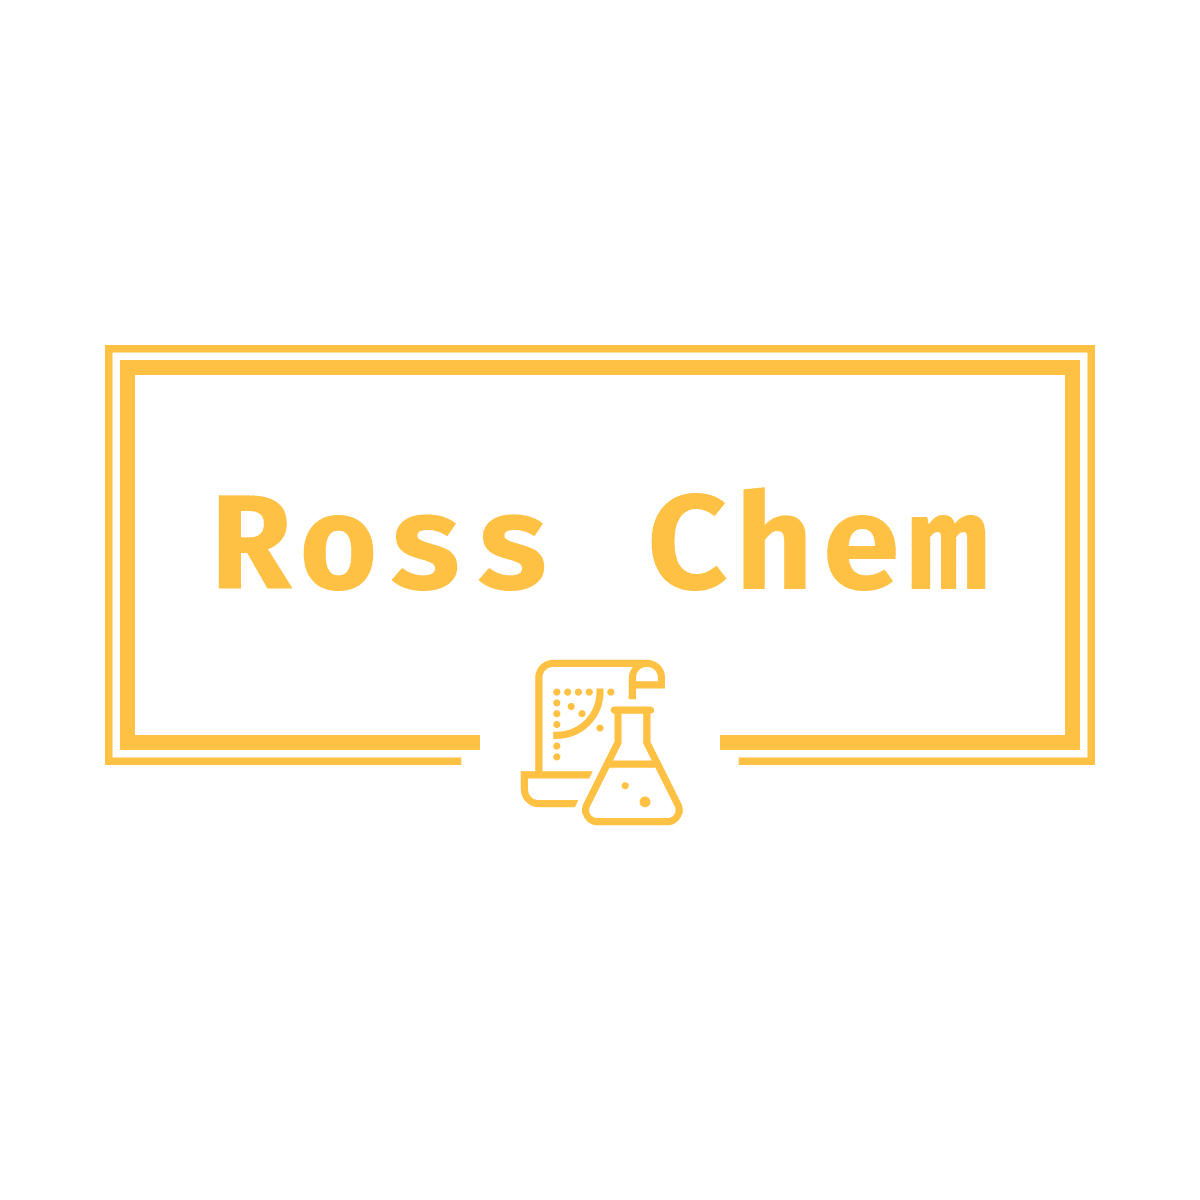 Ross Chem